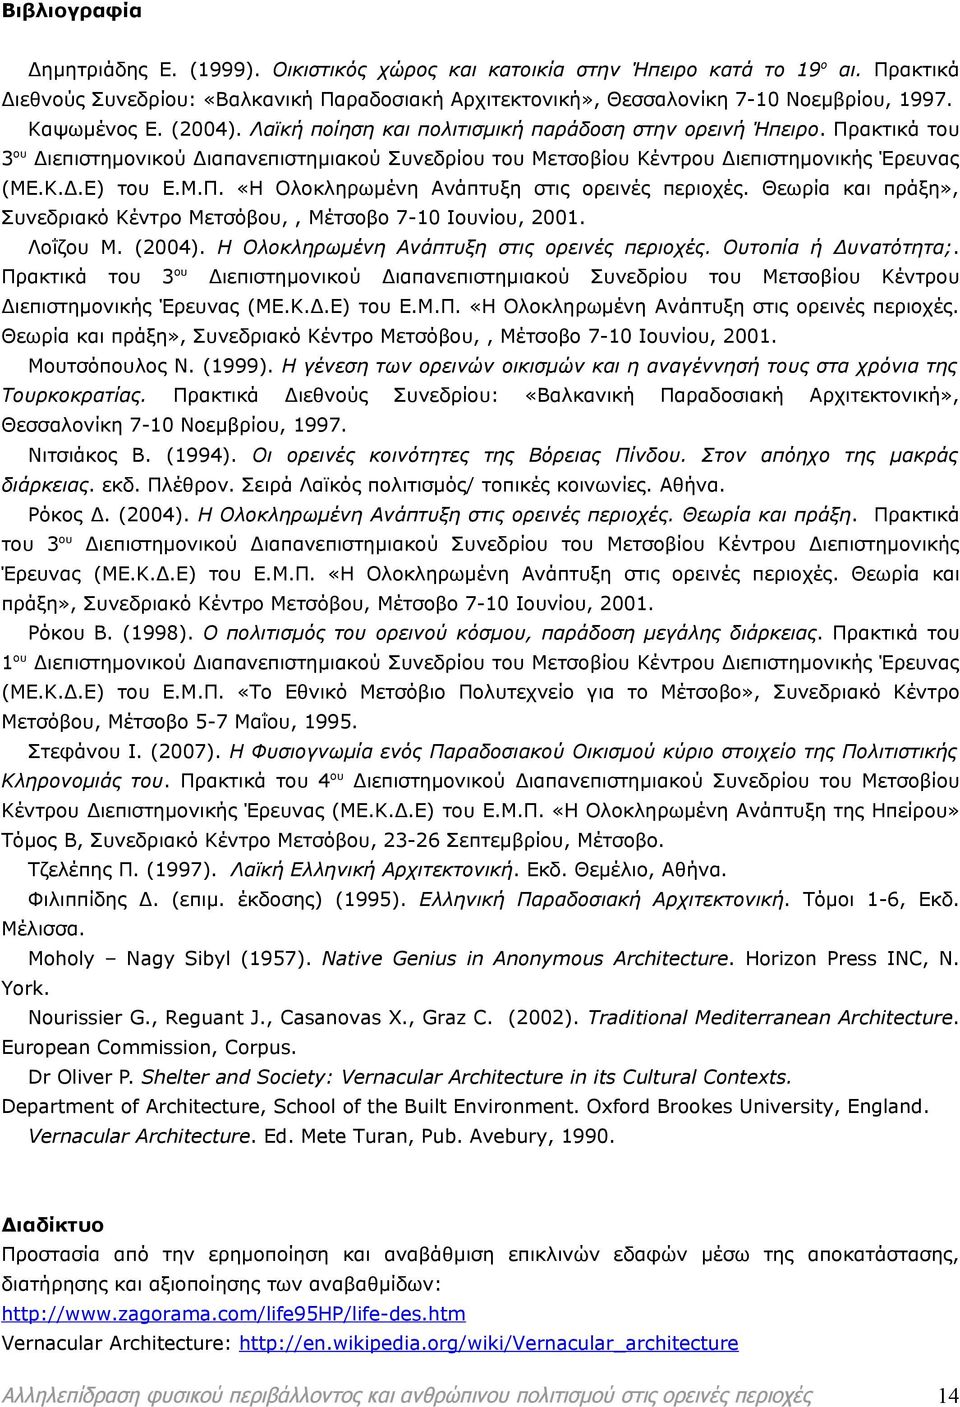 Θεωρία πράξη», Συνεδριακό Κέντρο Μετσόβου,, Μέτσοβο 7-10 Ιουνίου, 2001. Λοΐζου Μ. (2004). Η Ολοκληρωμένη Ανάπτυξη στις ορεινές περιοχές. Ουτοπία ή Δυνατότητα;.